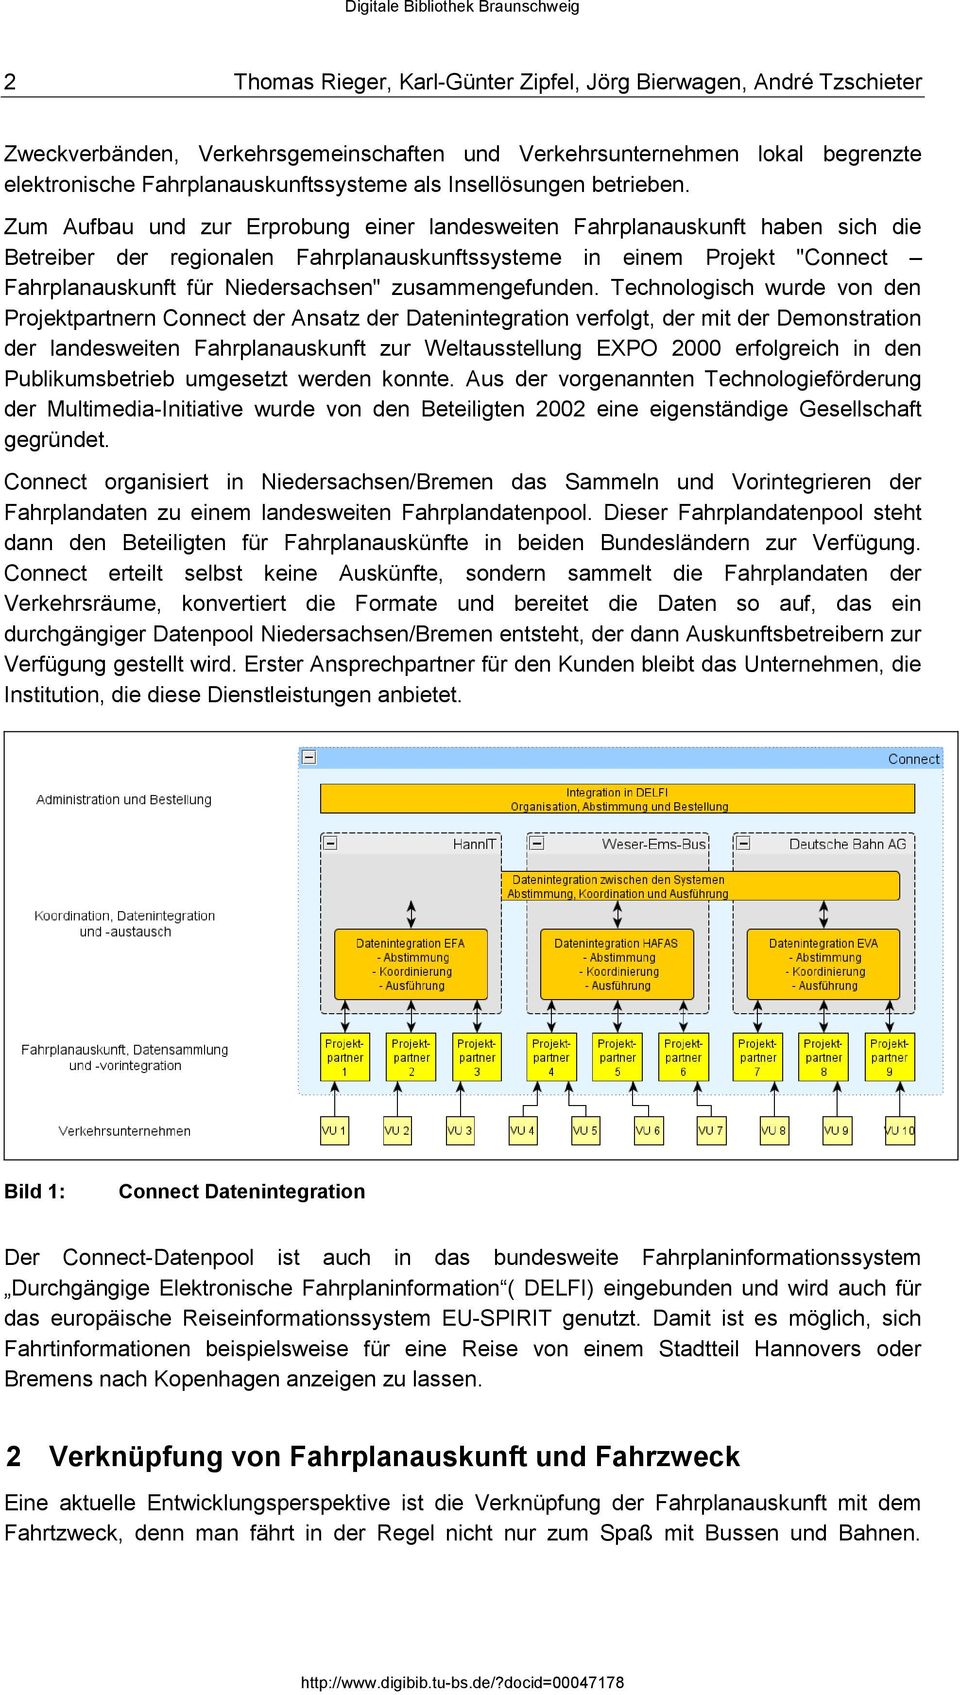 Zum Aufbau und zur Erprobung einer landesweiten Fahrplanauskunft haben sich die Betreiber der regionalen Fahrplanauskunftssysteme in einem Projekt "Connect Fahrplanauskunft für Niedersachsen"